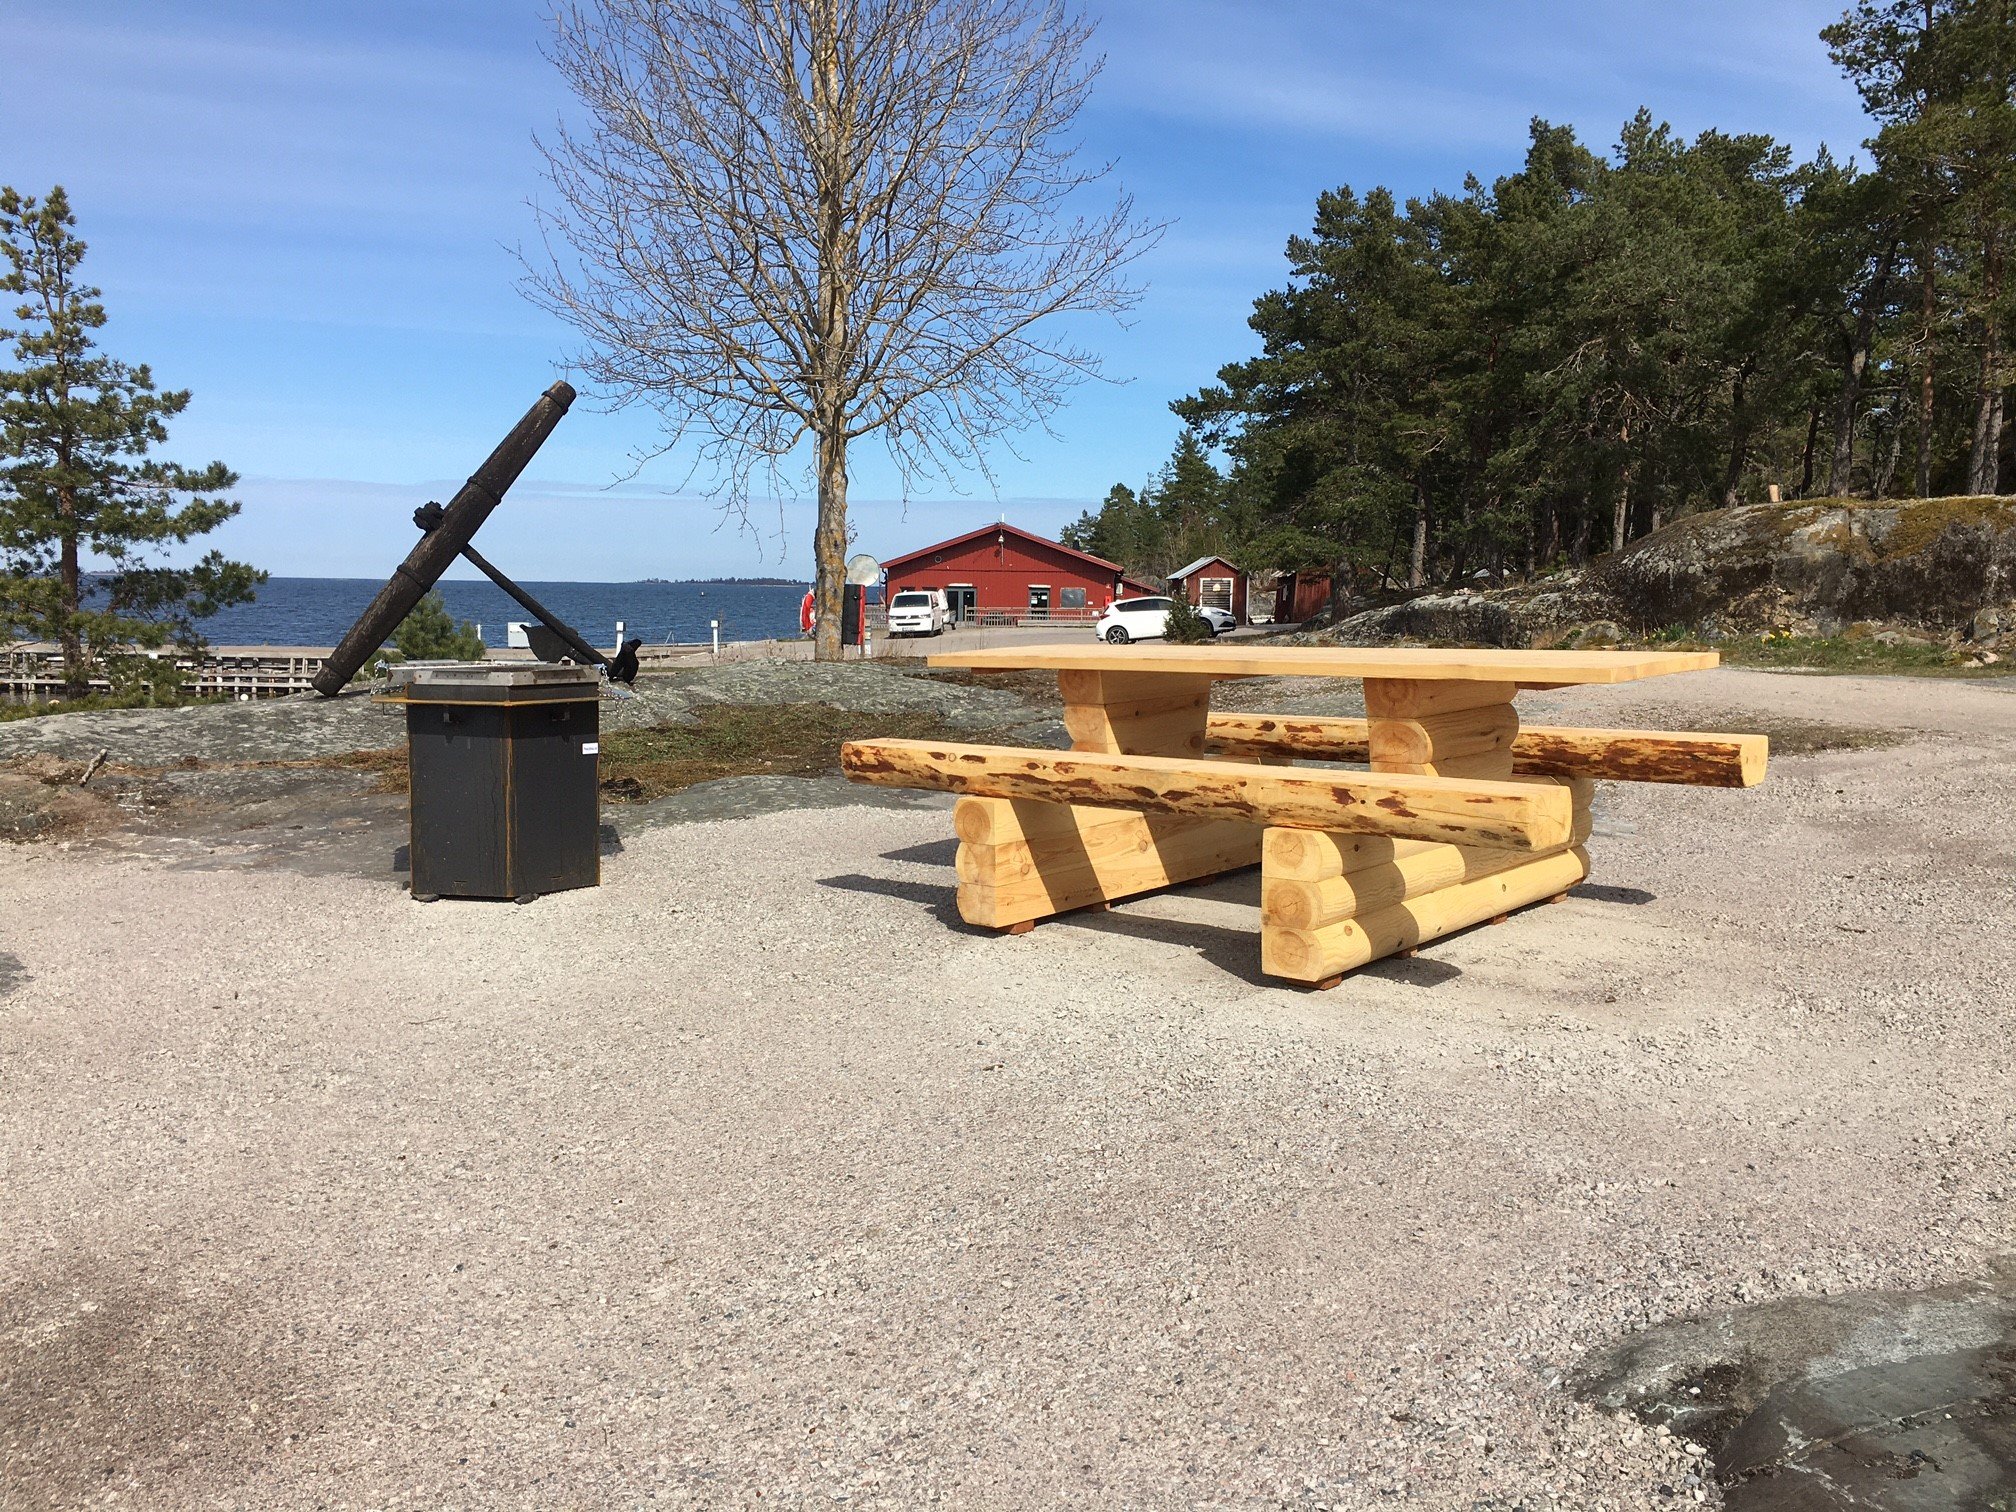 Hårdgjort underlag, grill och tillgänglighetsanpassat fikabord. I bakgrunden Kolhuset och utsikt över havet.